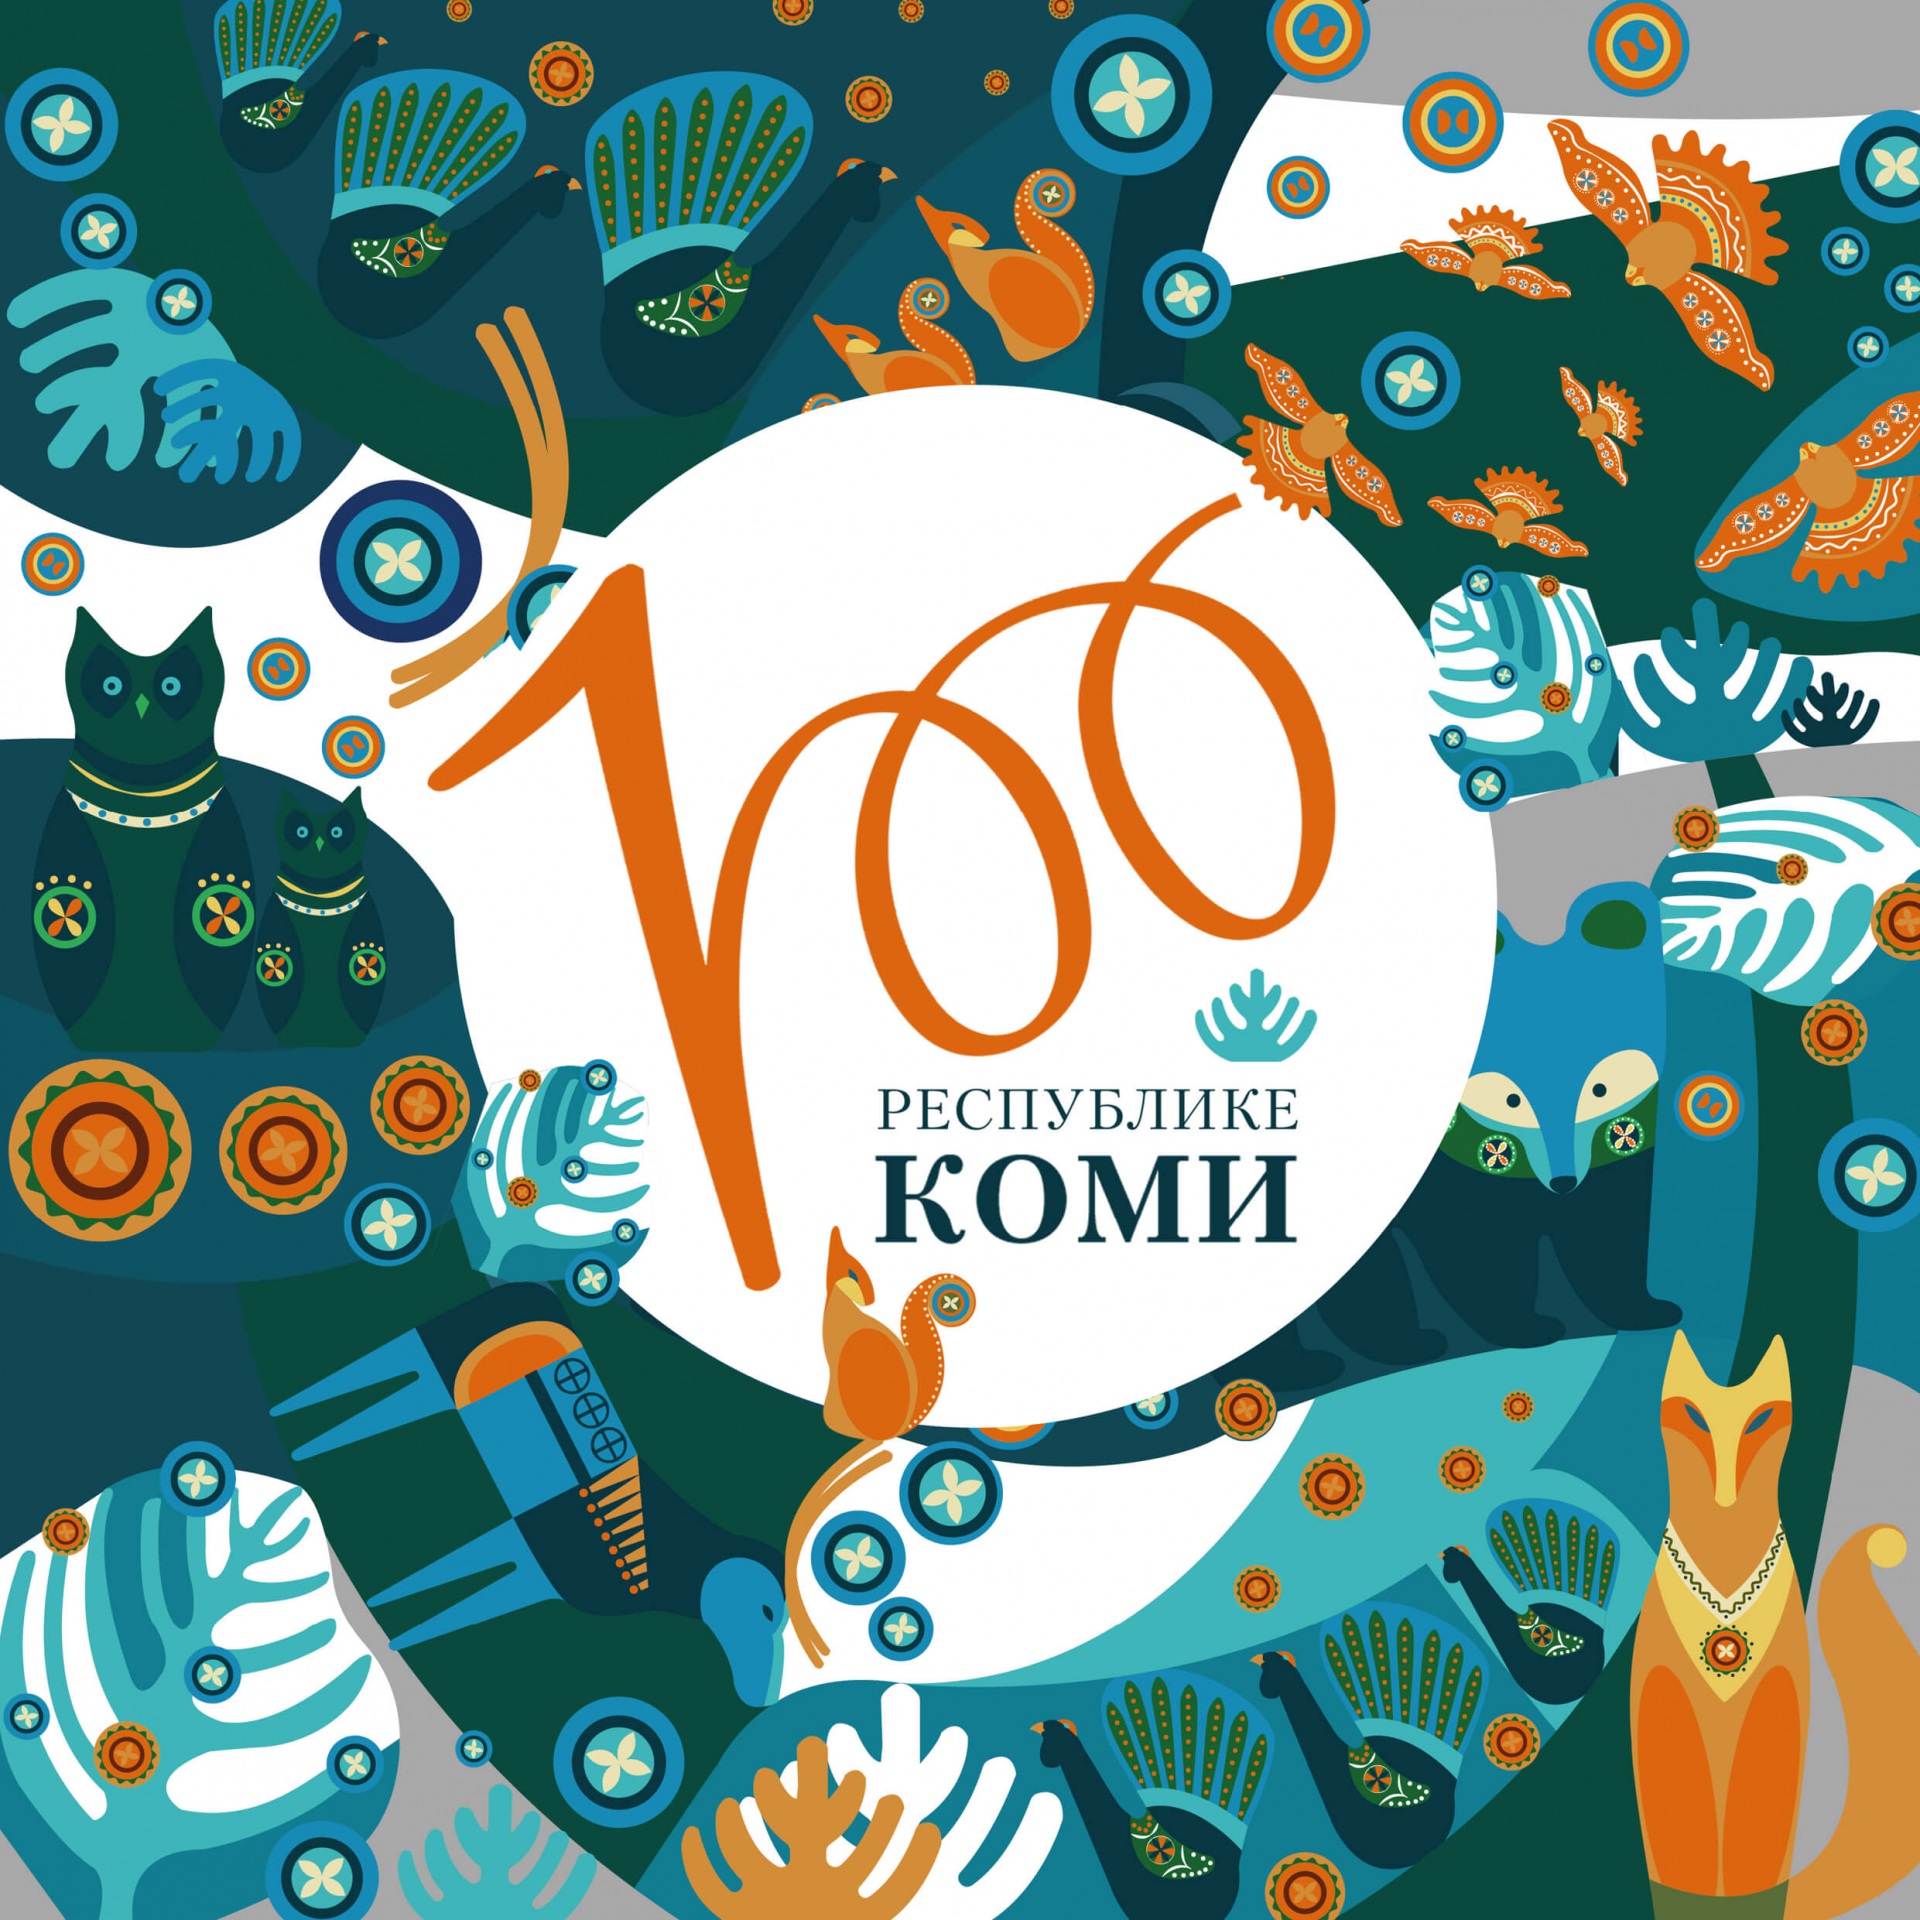 Эмблема празднования 100-летия Республики Коми